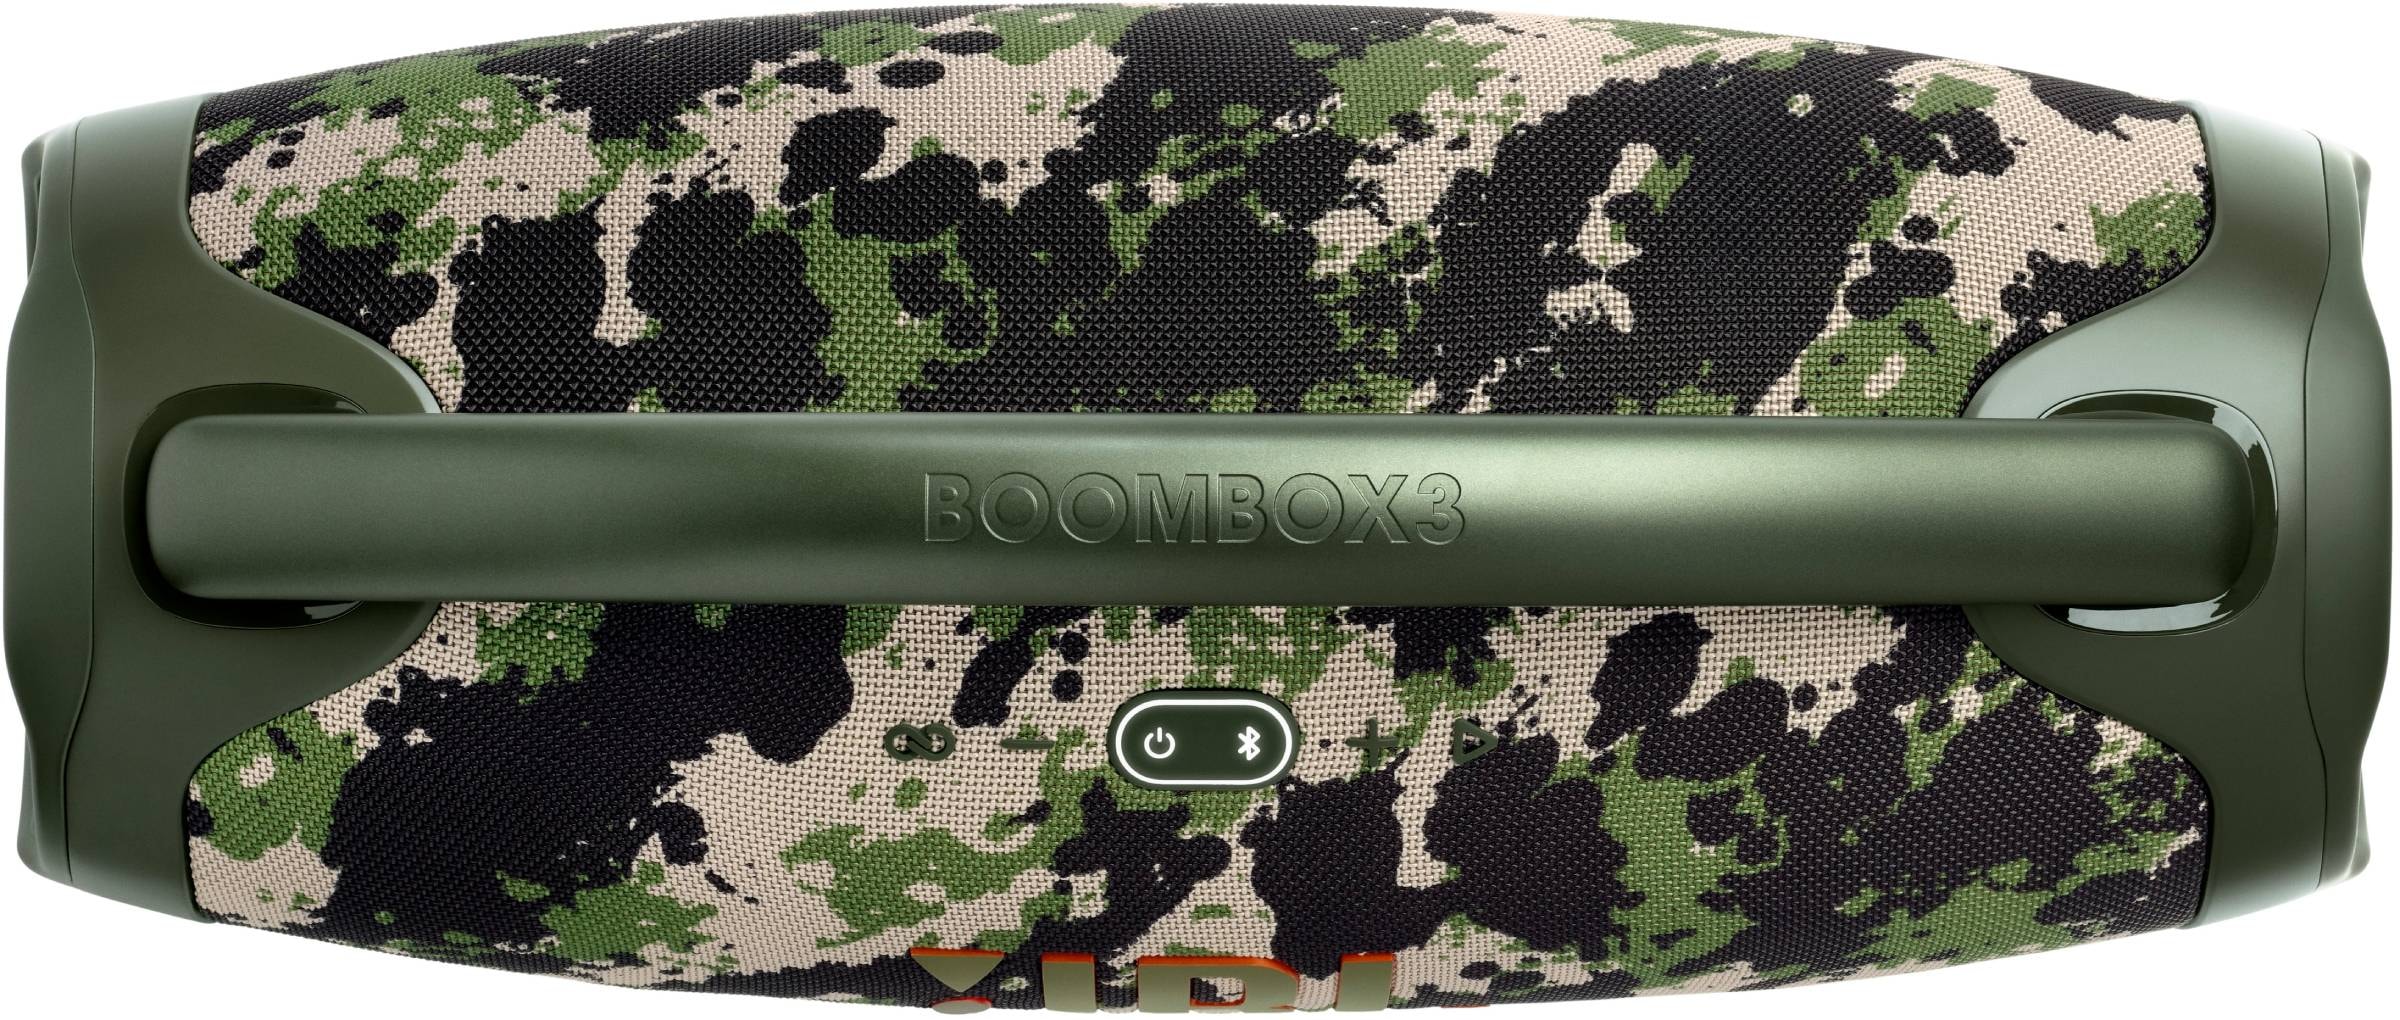 Boombox 3 180 вт. JBL Boombox 3 Squad. JBL Boombox камуфляж. JBL Boombox 3 140вт. "Колонка JBLBOOMBOX 3".